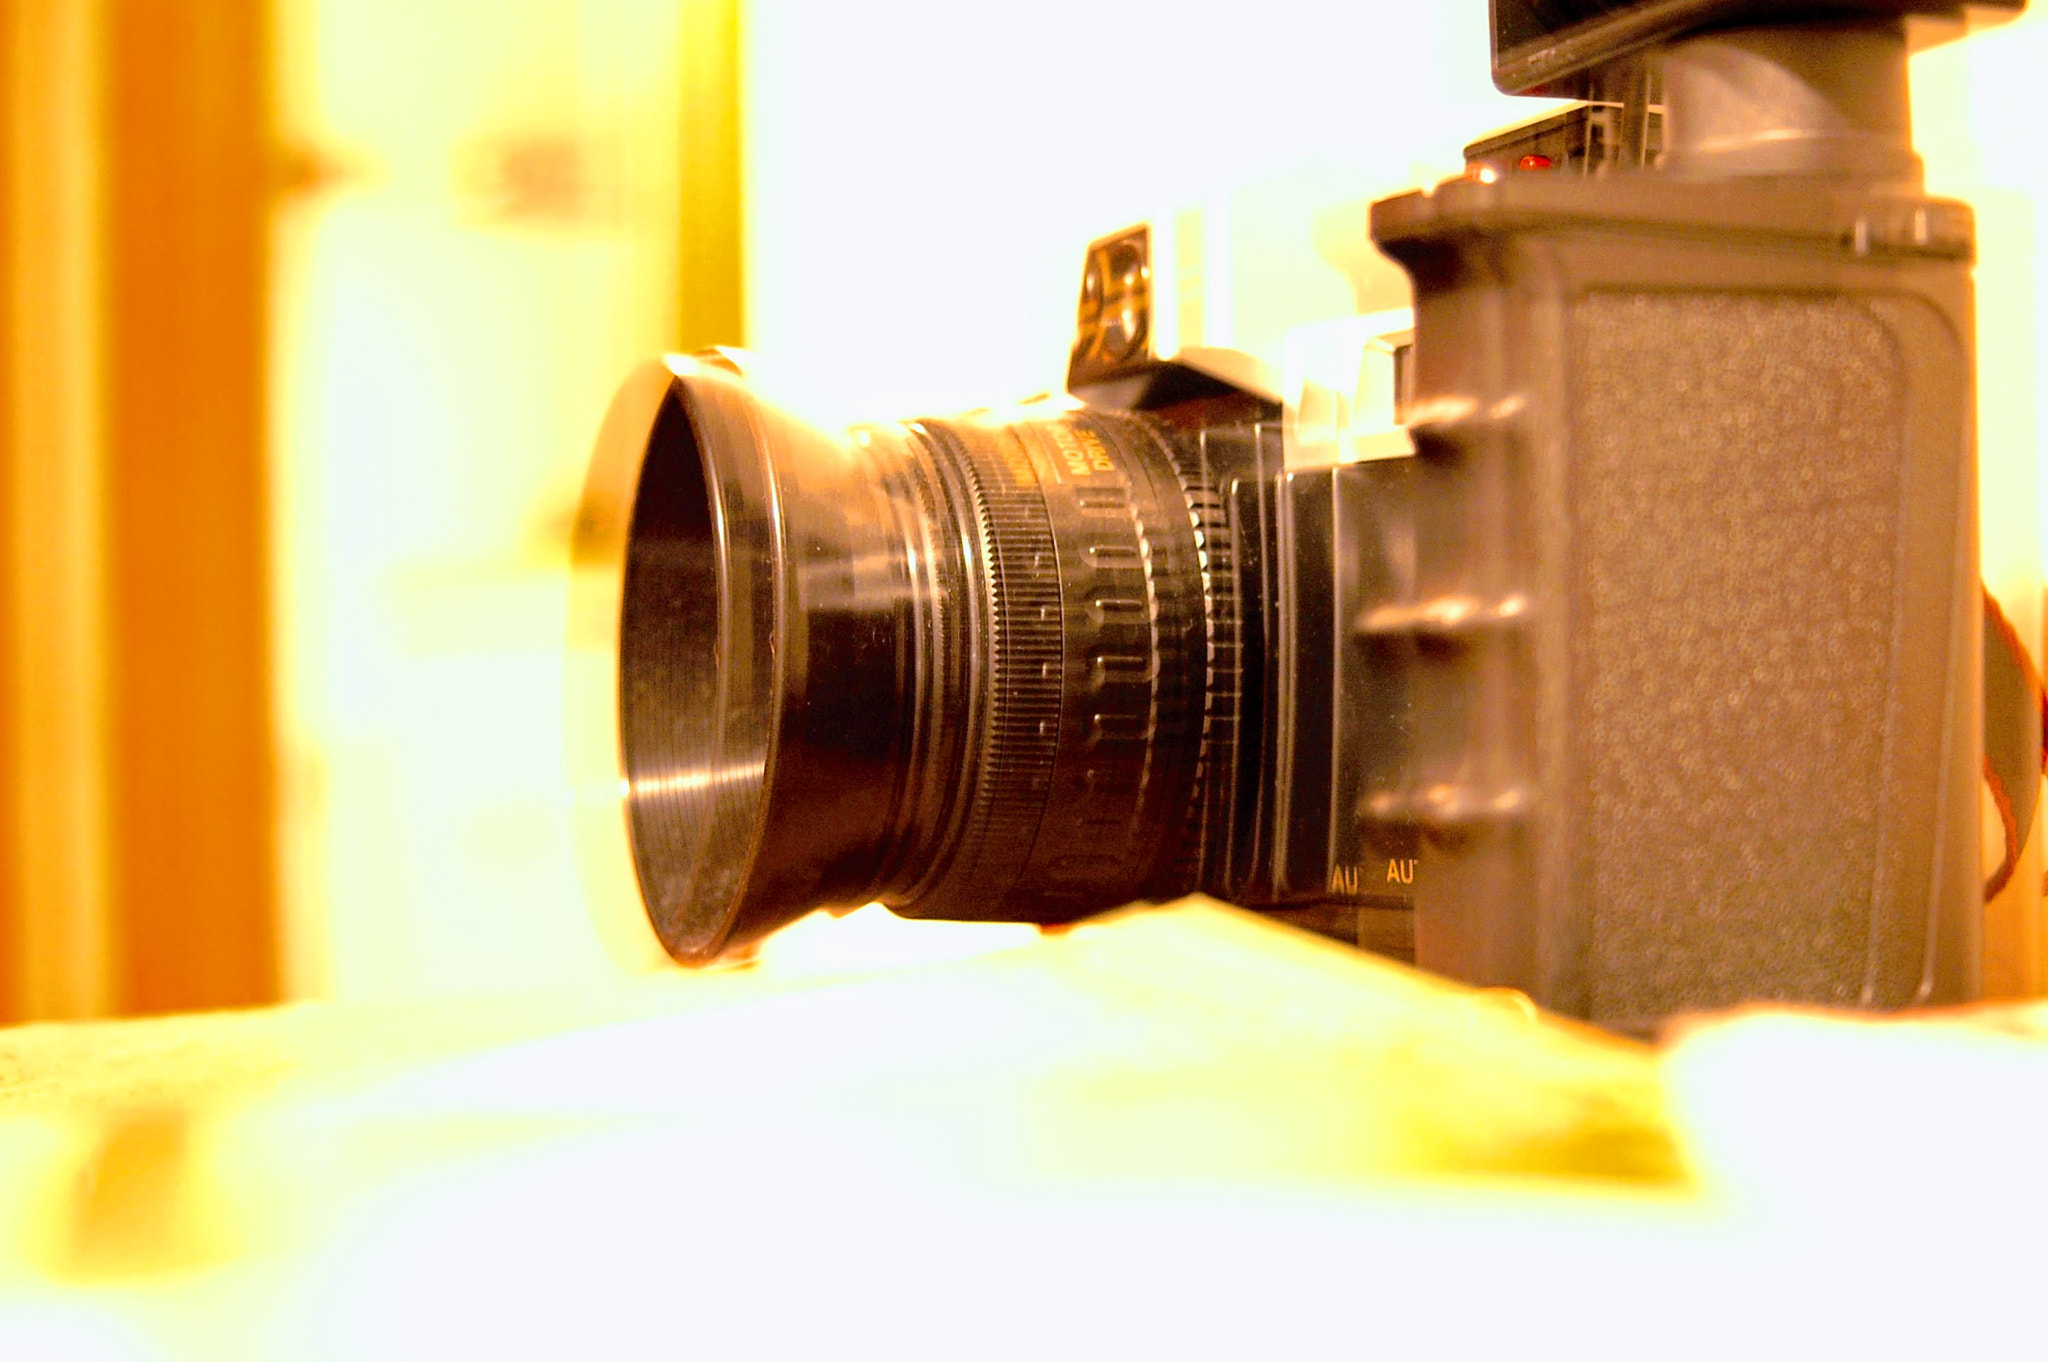 Nikon D70 + AF Zoom-Nikkor 35-80mm f/4-5.6D sample photo. Meta photography